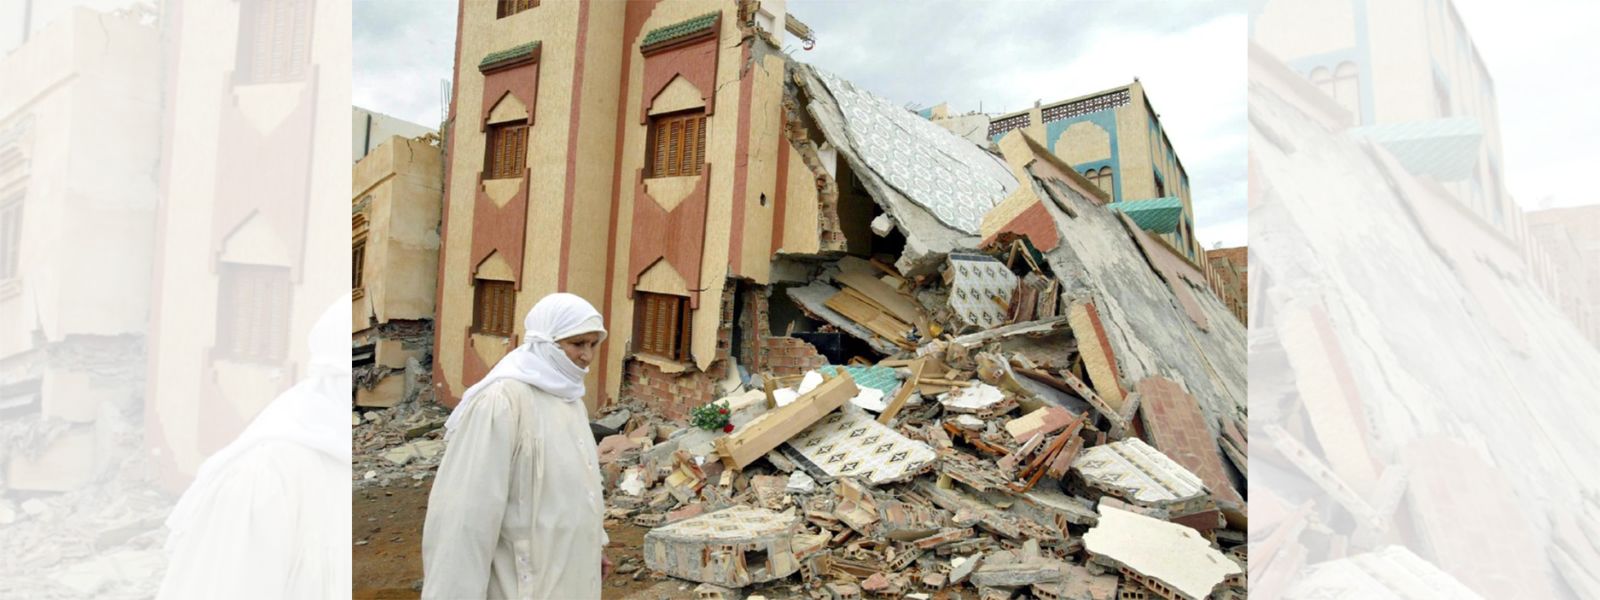 UPDATE: Morocco quake death toll crosses 1,000